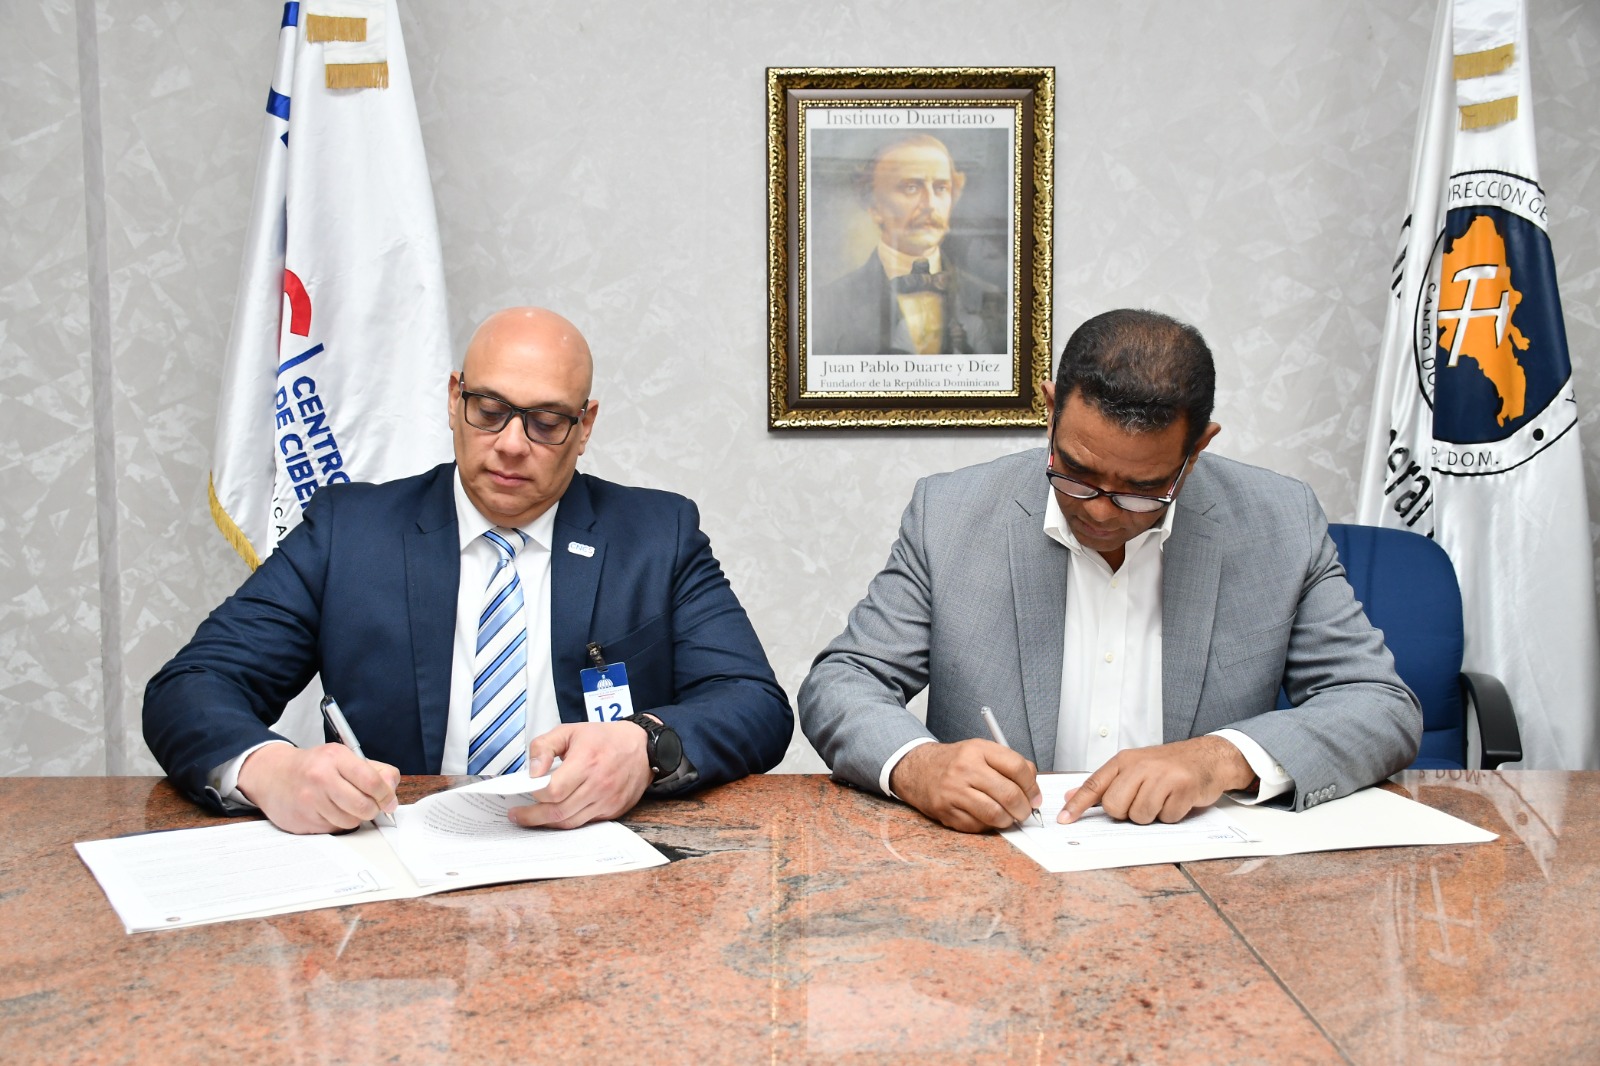 Ciberseguridad y Minería firman acuerdo para la creación y fortalecimiento de entornos digitales seguros